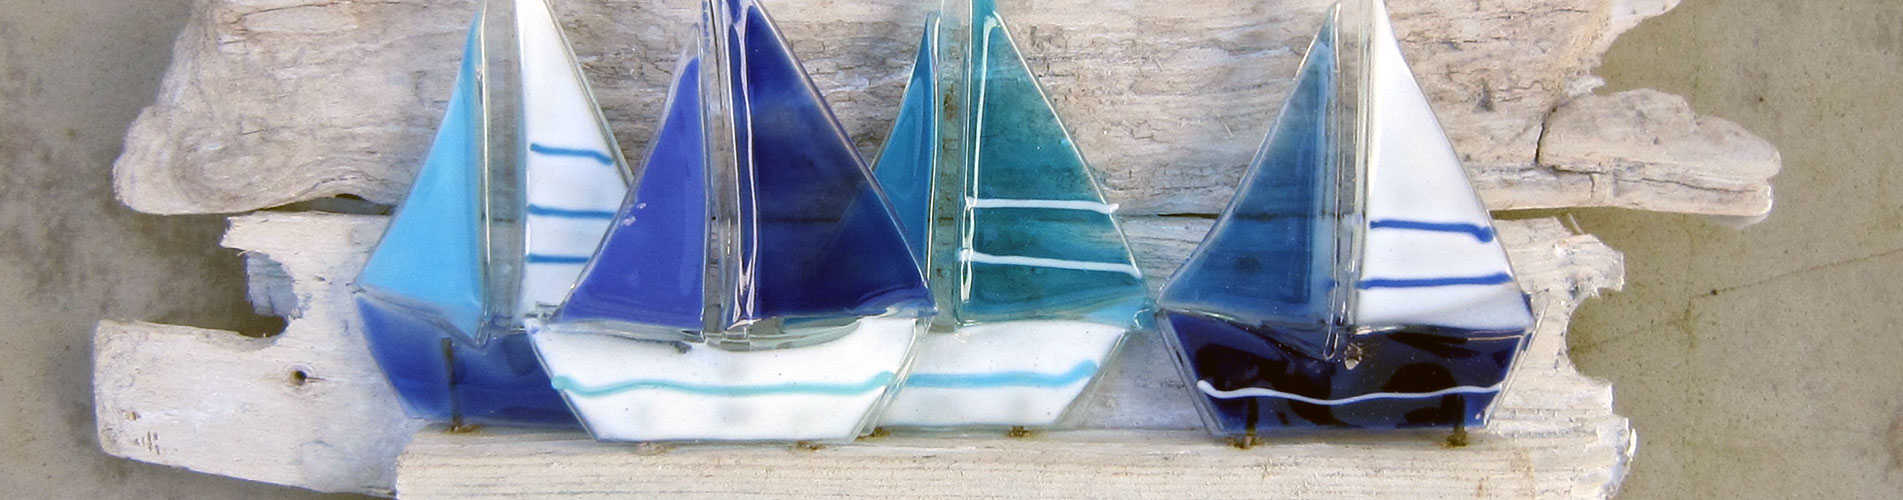 Sejlskibe i glas på drivtømmer